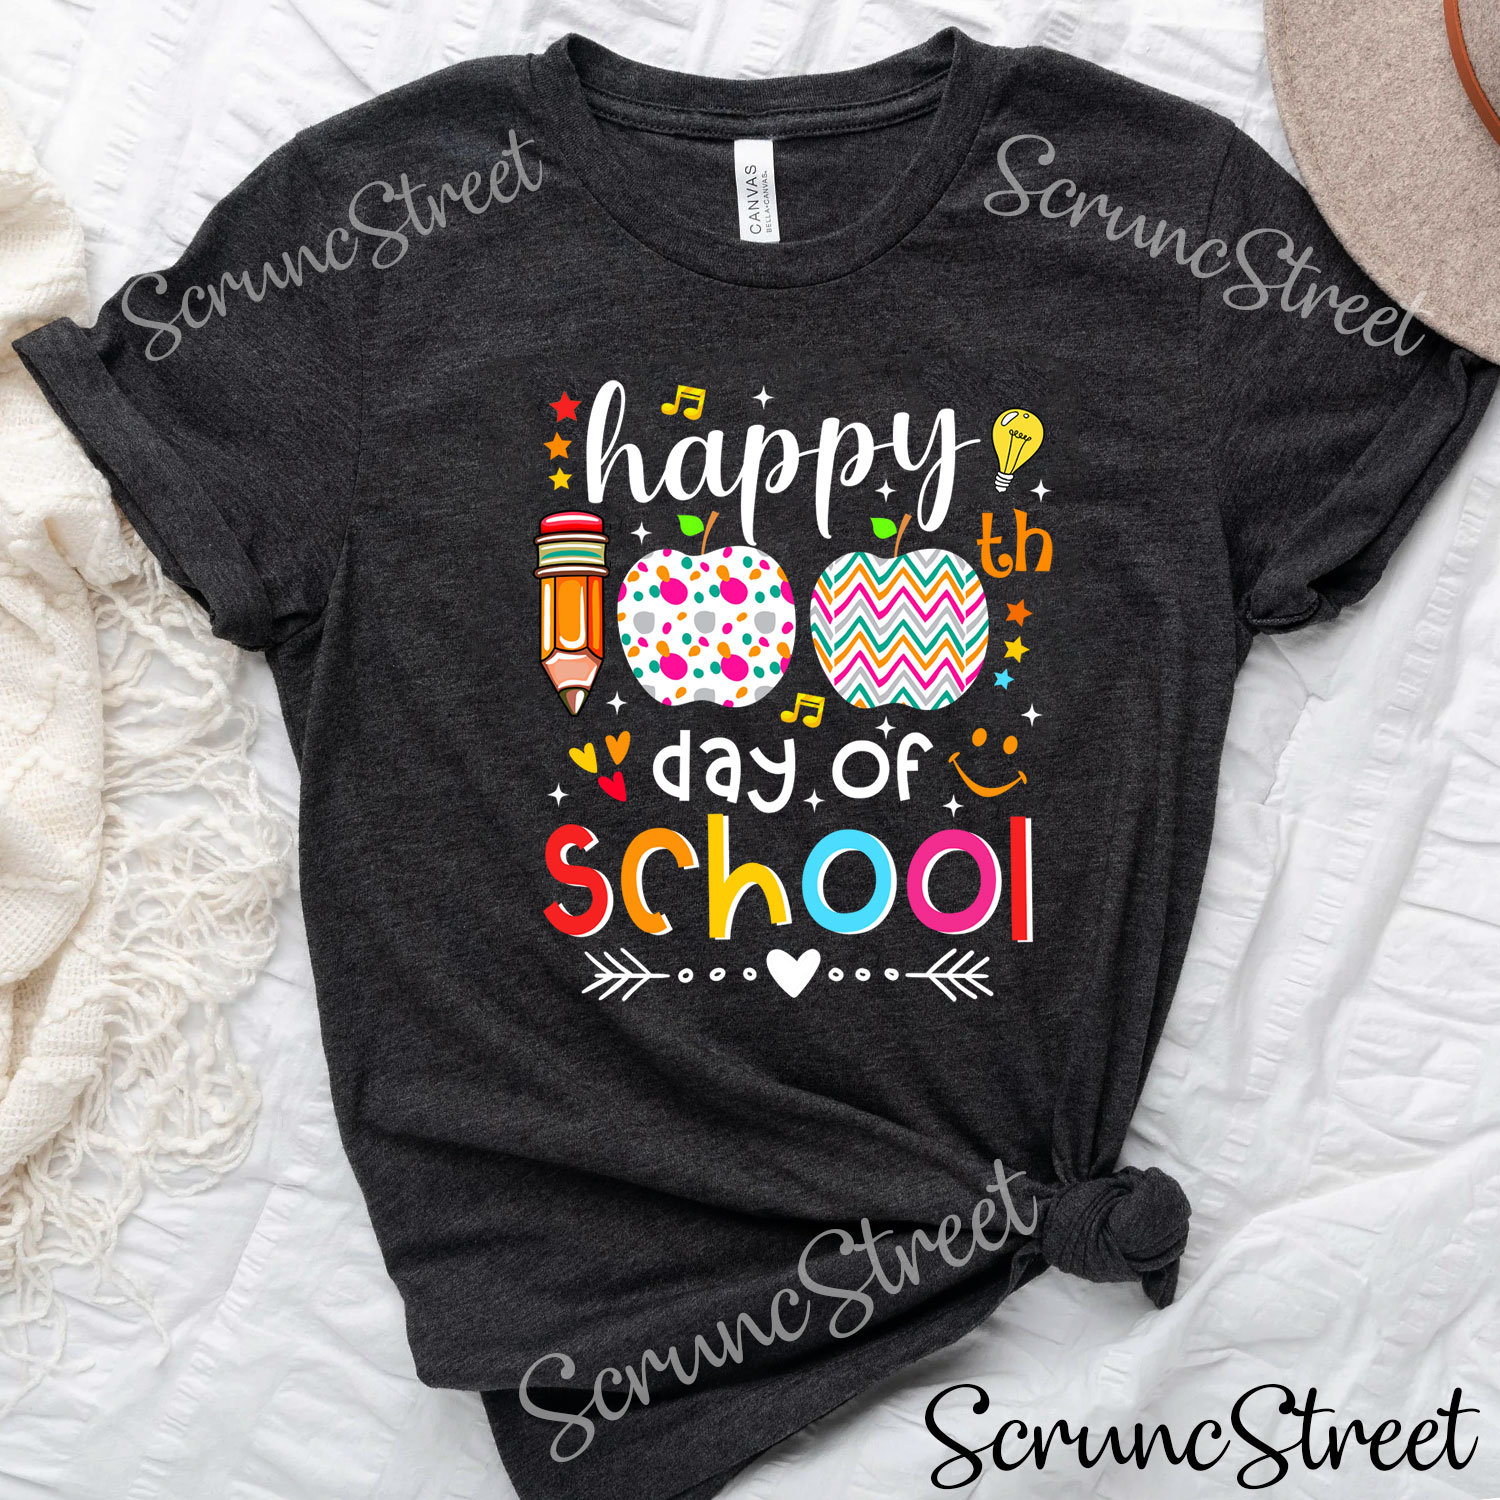 Happy 100Th Day Of School Shirt, Lustiges 100. Schultags Shirt Für Lehrer & Studenten, 100 Tage Y'all, Smarter, Geschenke von ScruncStreet